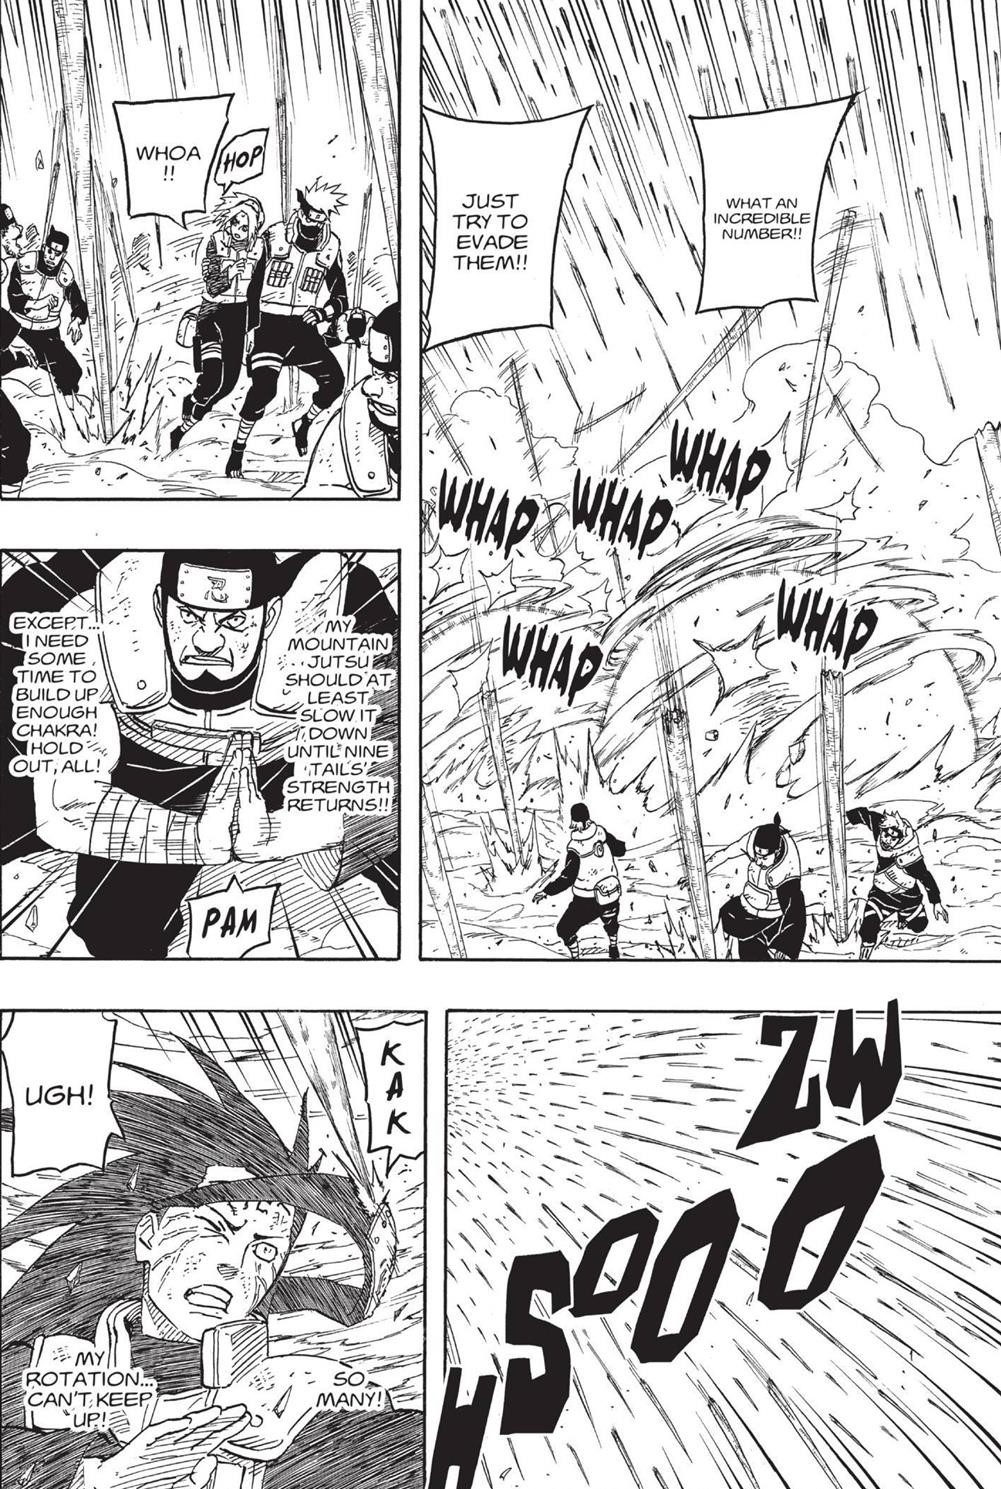 Sakura (Boruto) vs Naruto (Boruto/Sem Kurama)  - Página 5 19255967ea517095b66f7ee2d4ebcb70d5b943be